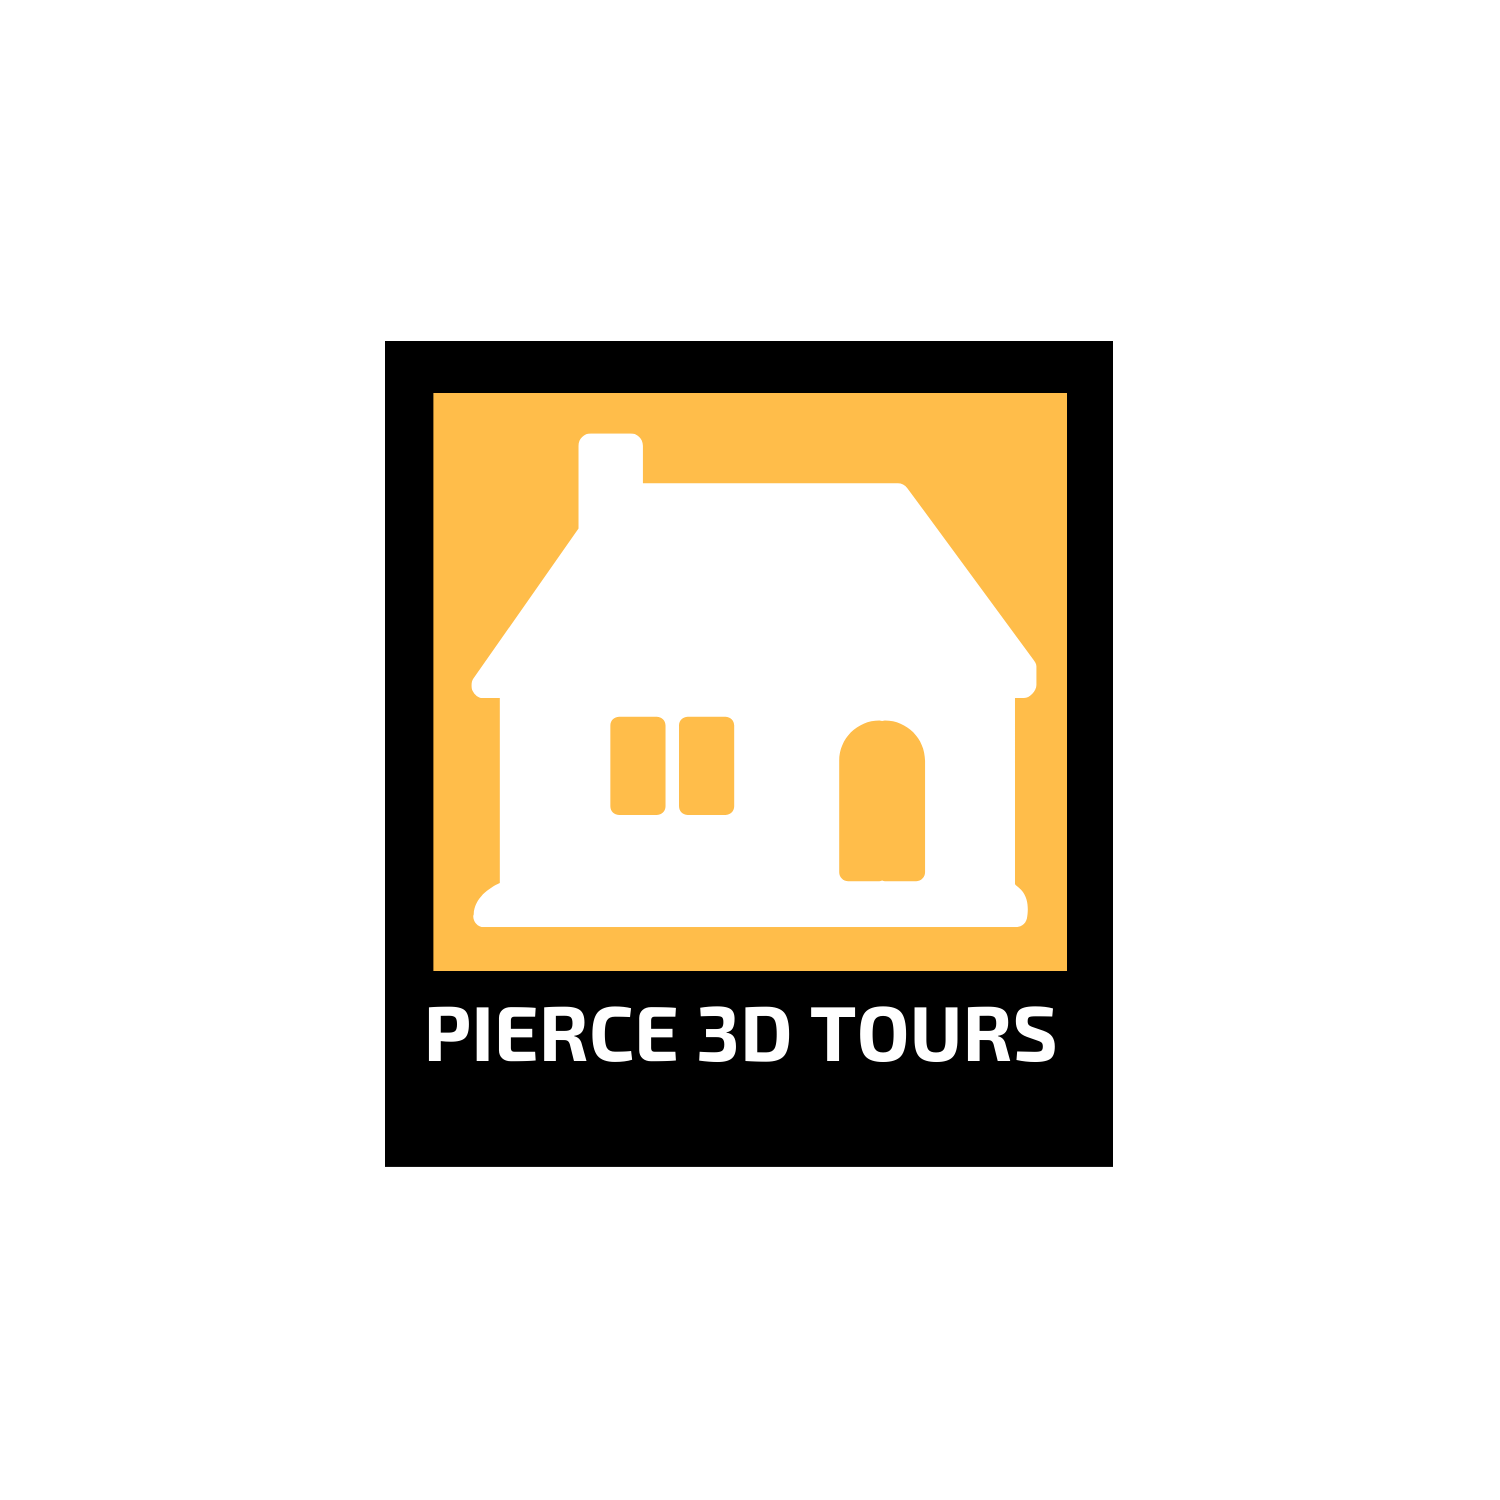 Pierce 3D Tours Logo